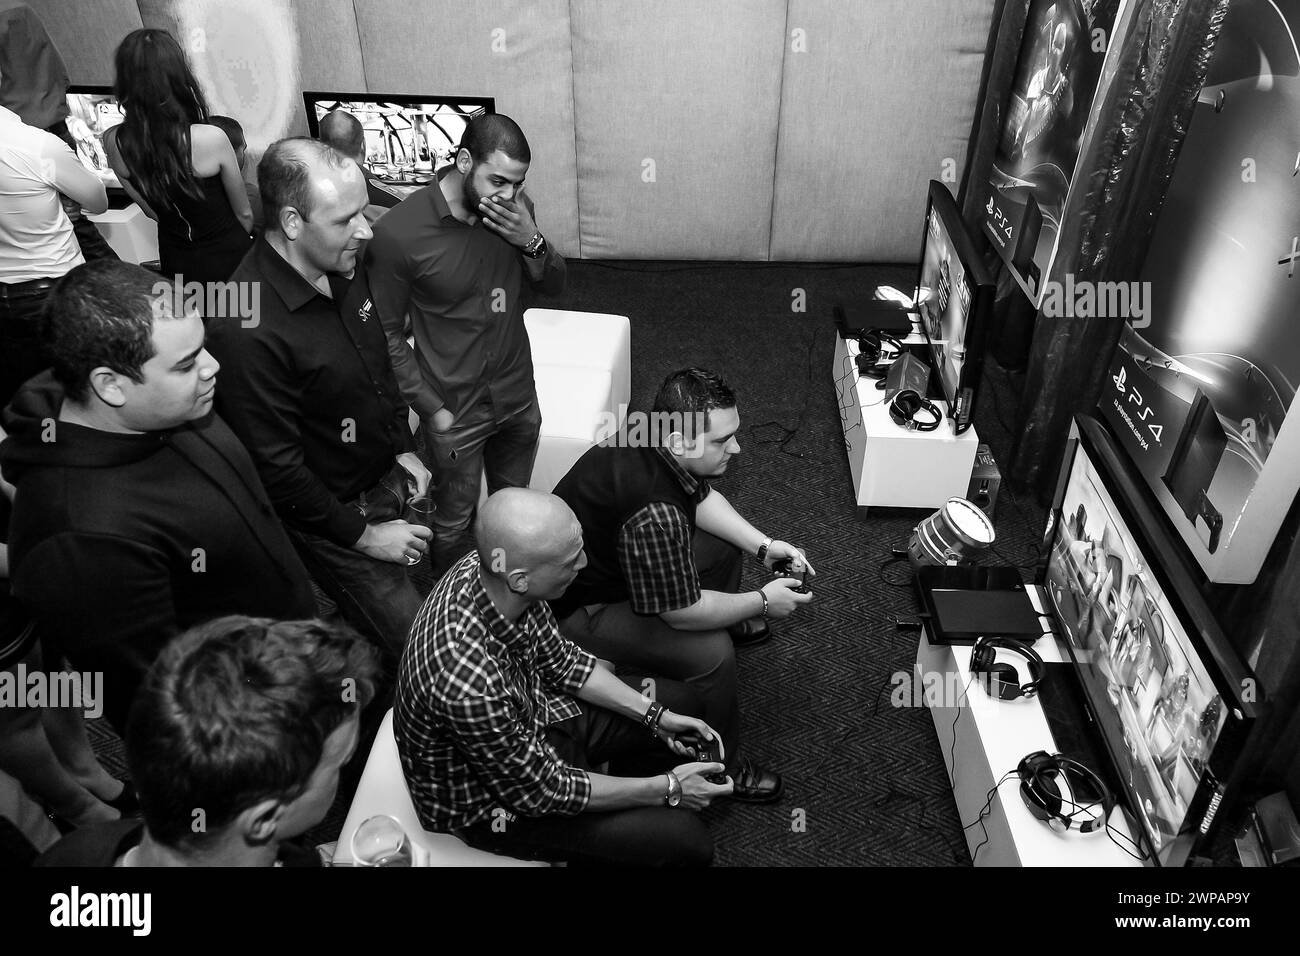 Groupe de personnes jouant à des jeux tout en regardant la télévision Banque D'Images